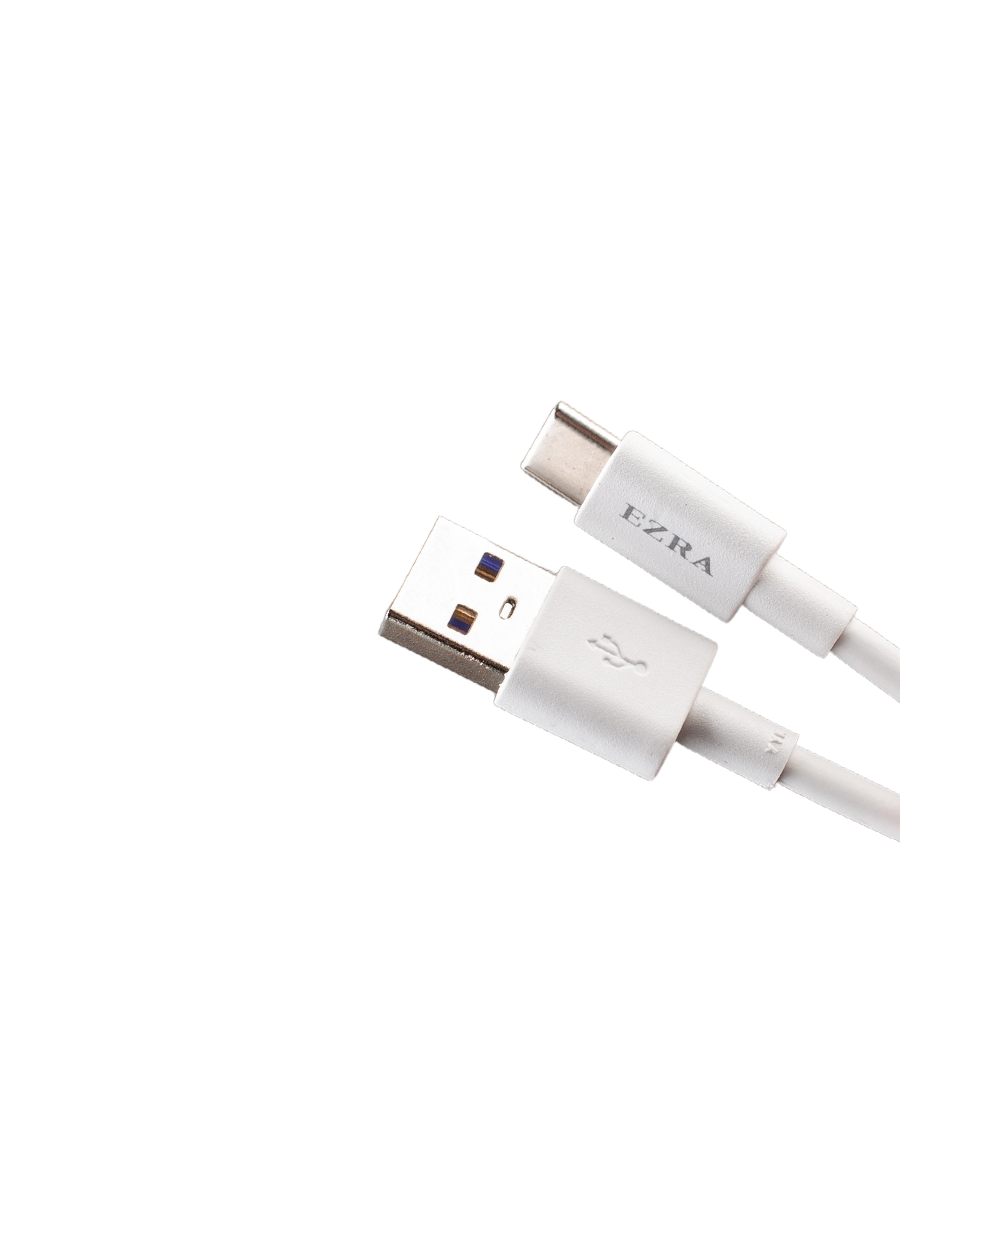 Καλώδιο Γρήγορης Φόρτισης & Μεταφοράς Δεδομένων USB 2.0 σε Type-C 5A, 1m EZRA DC72